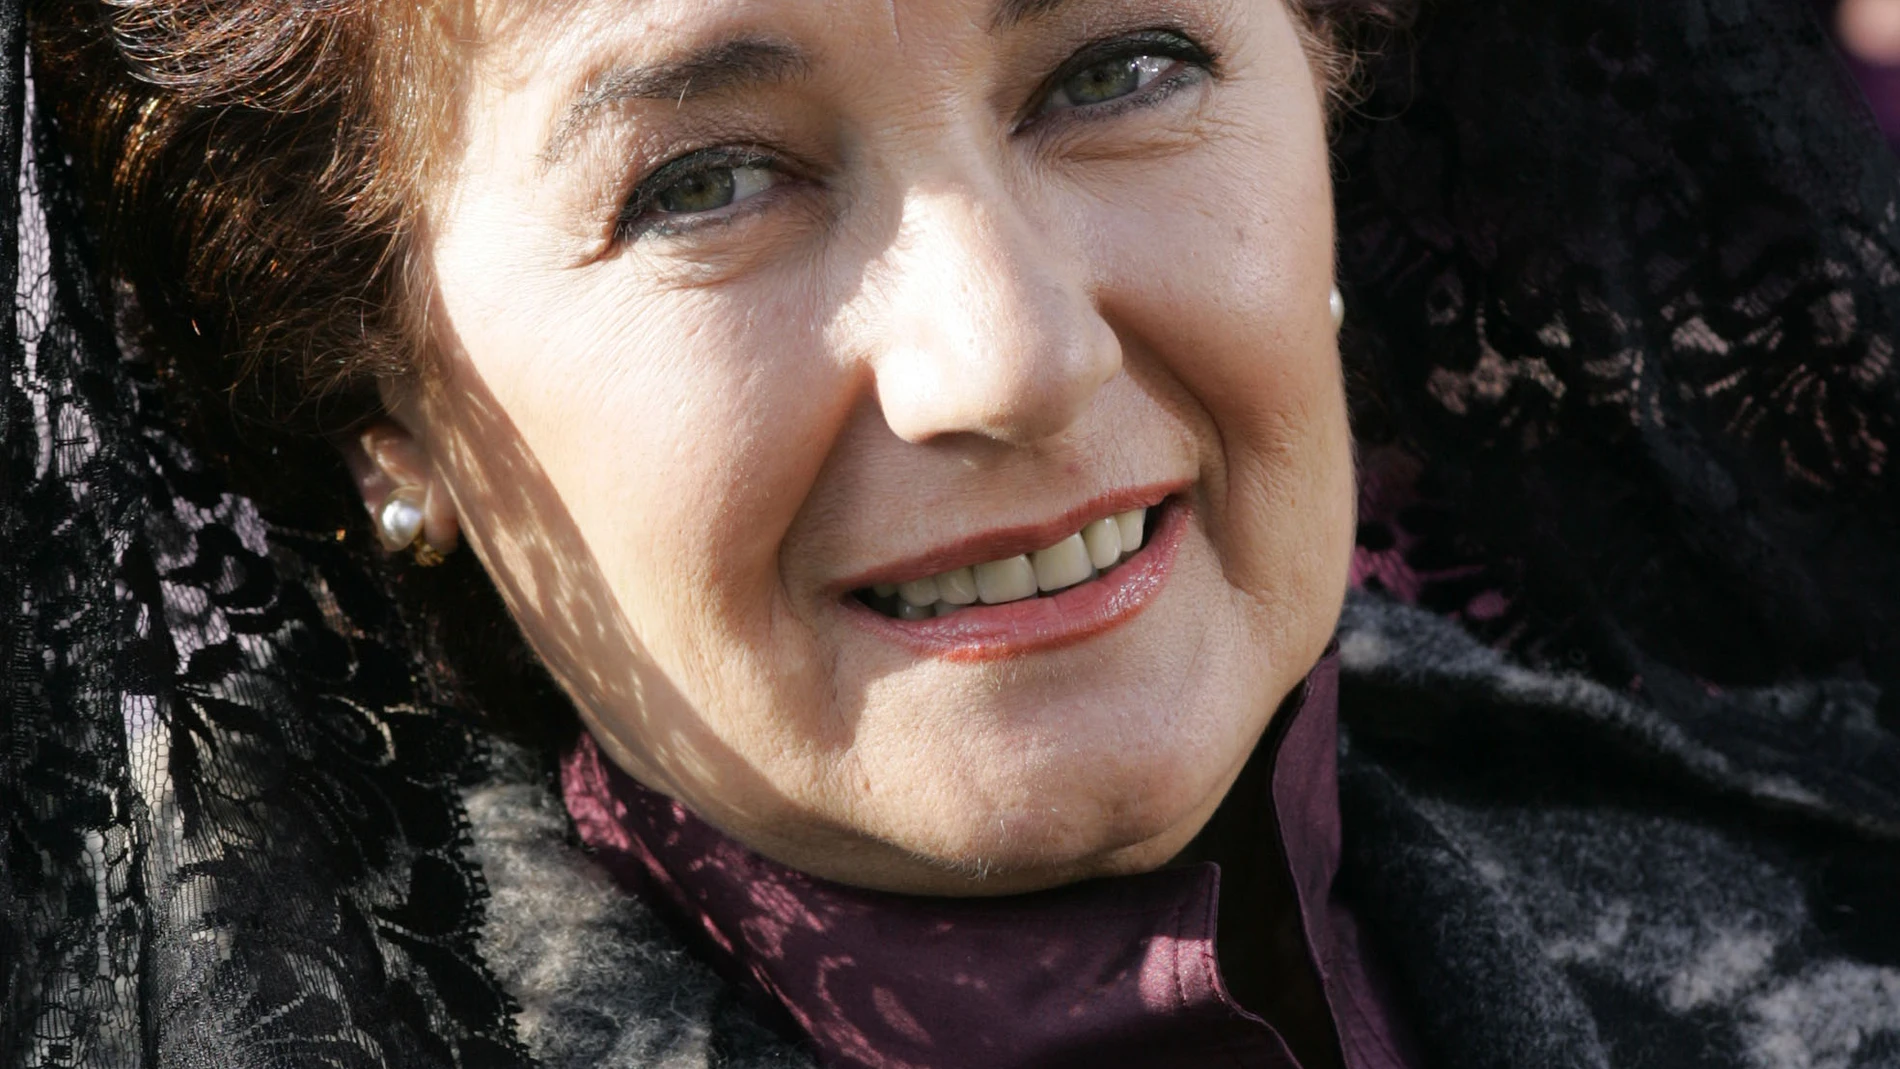 Beatriz Carvajal